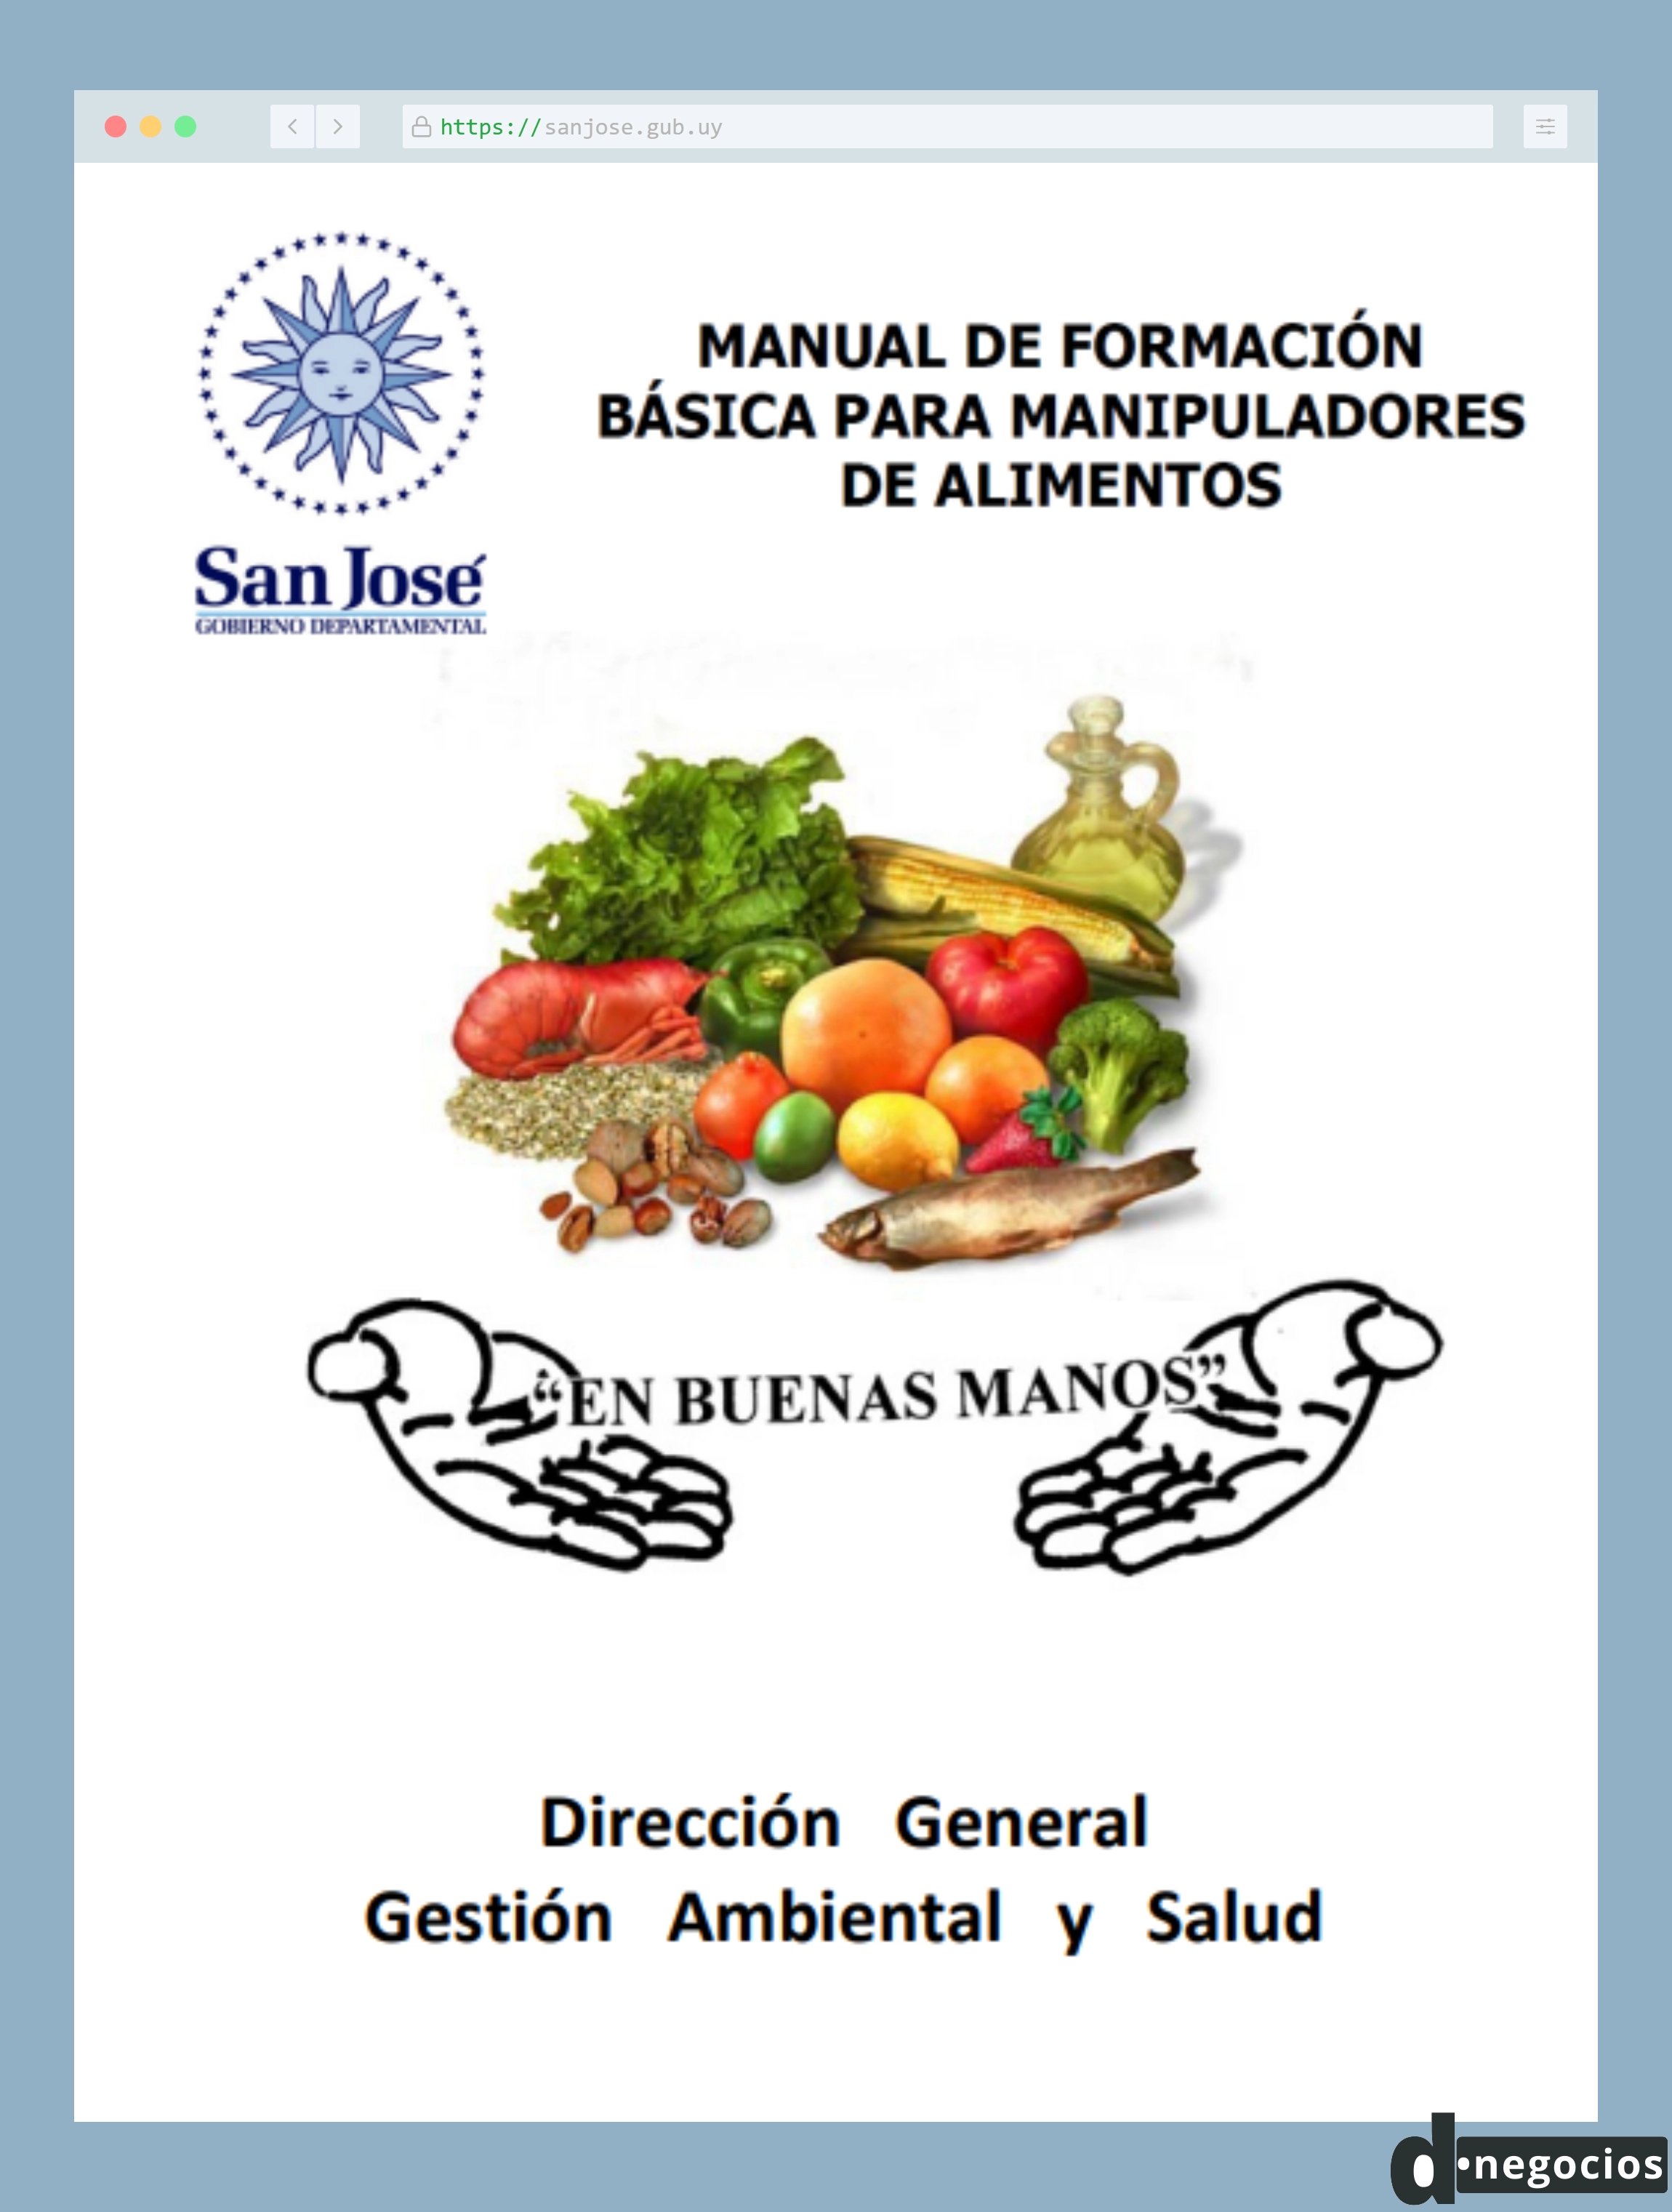 Manual de formación básica para la manipulación de alimentos.